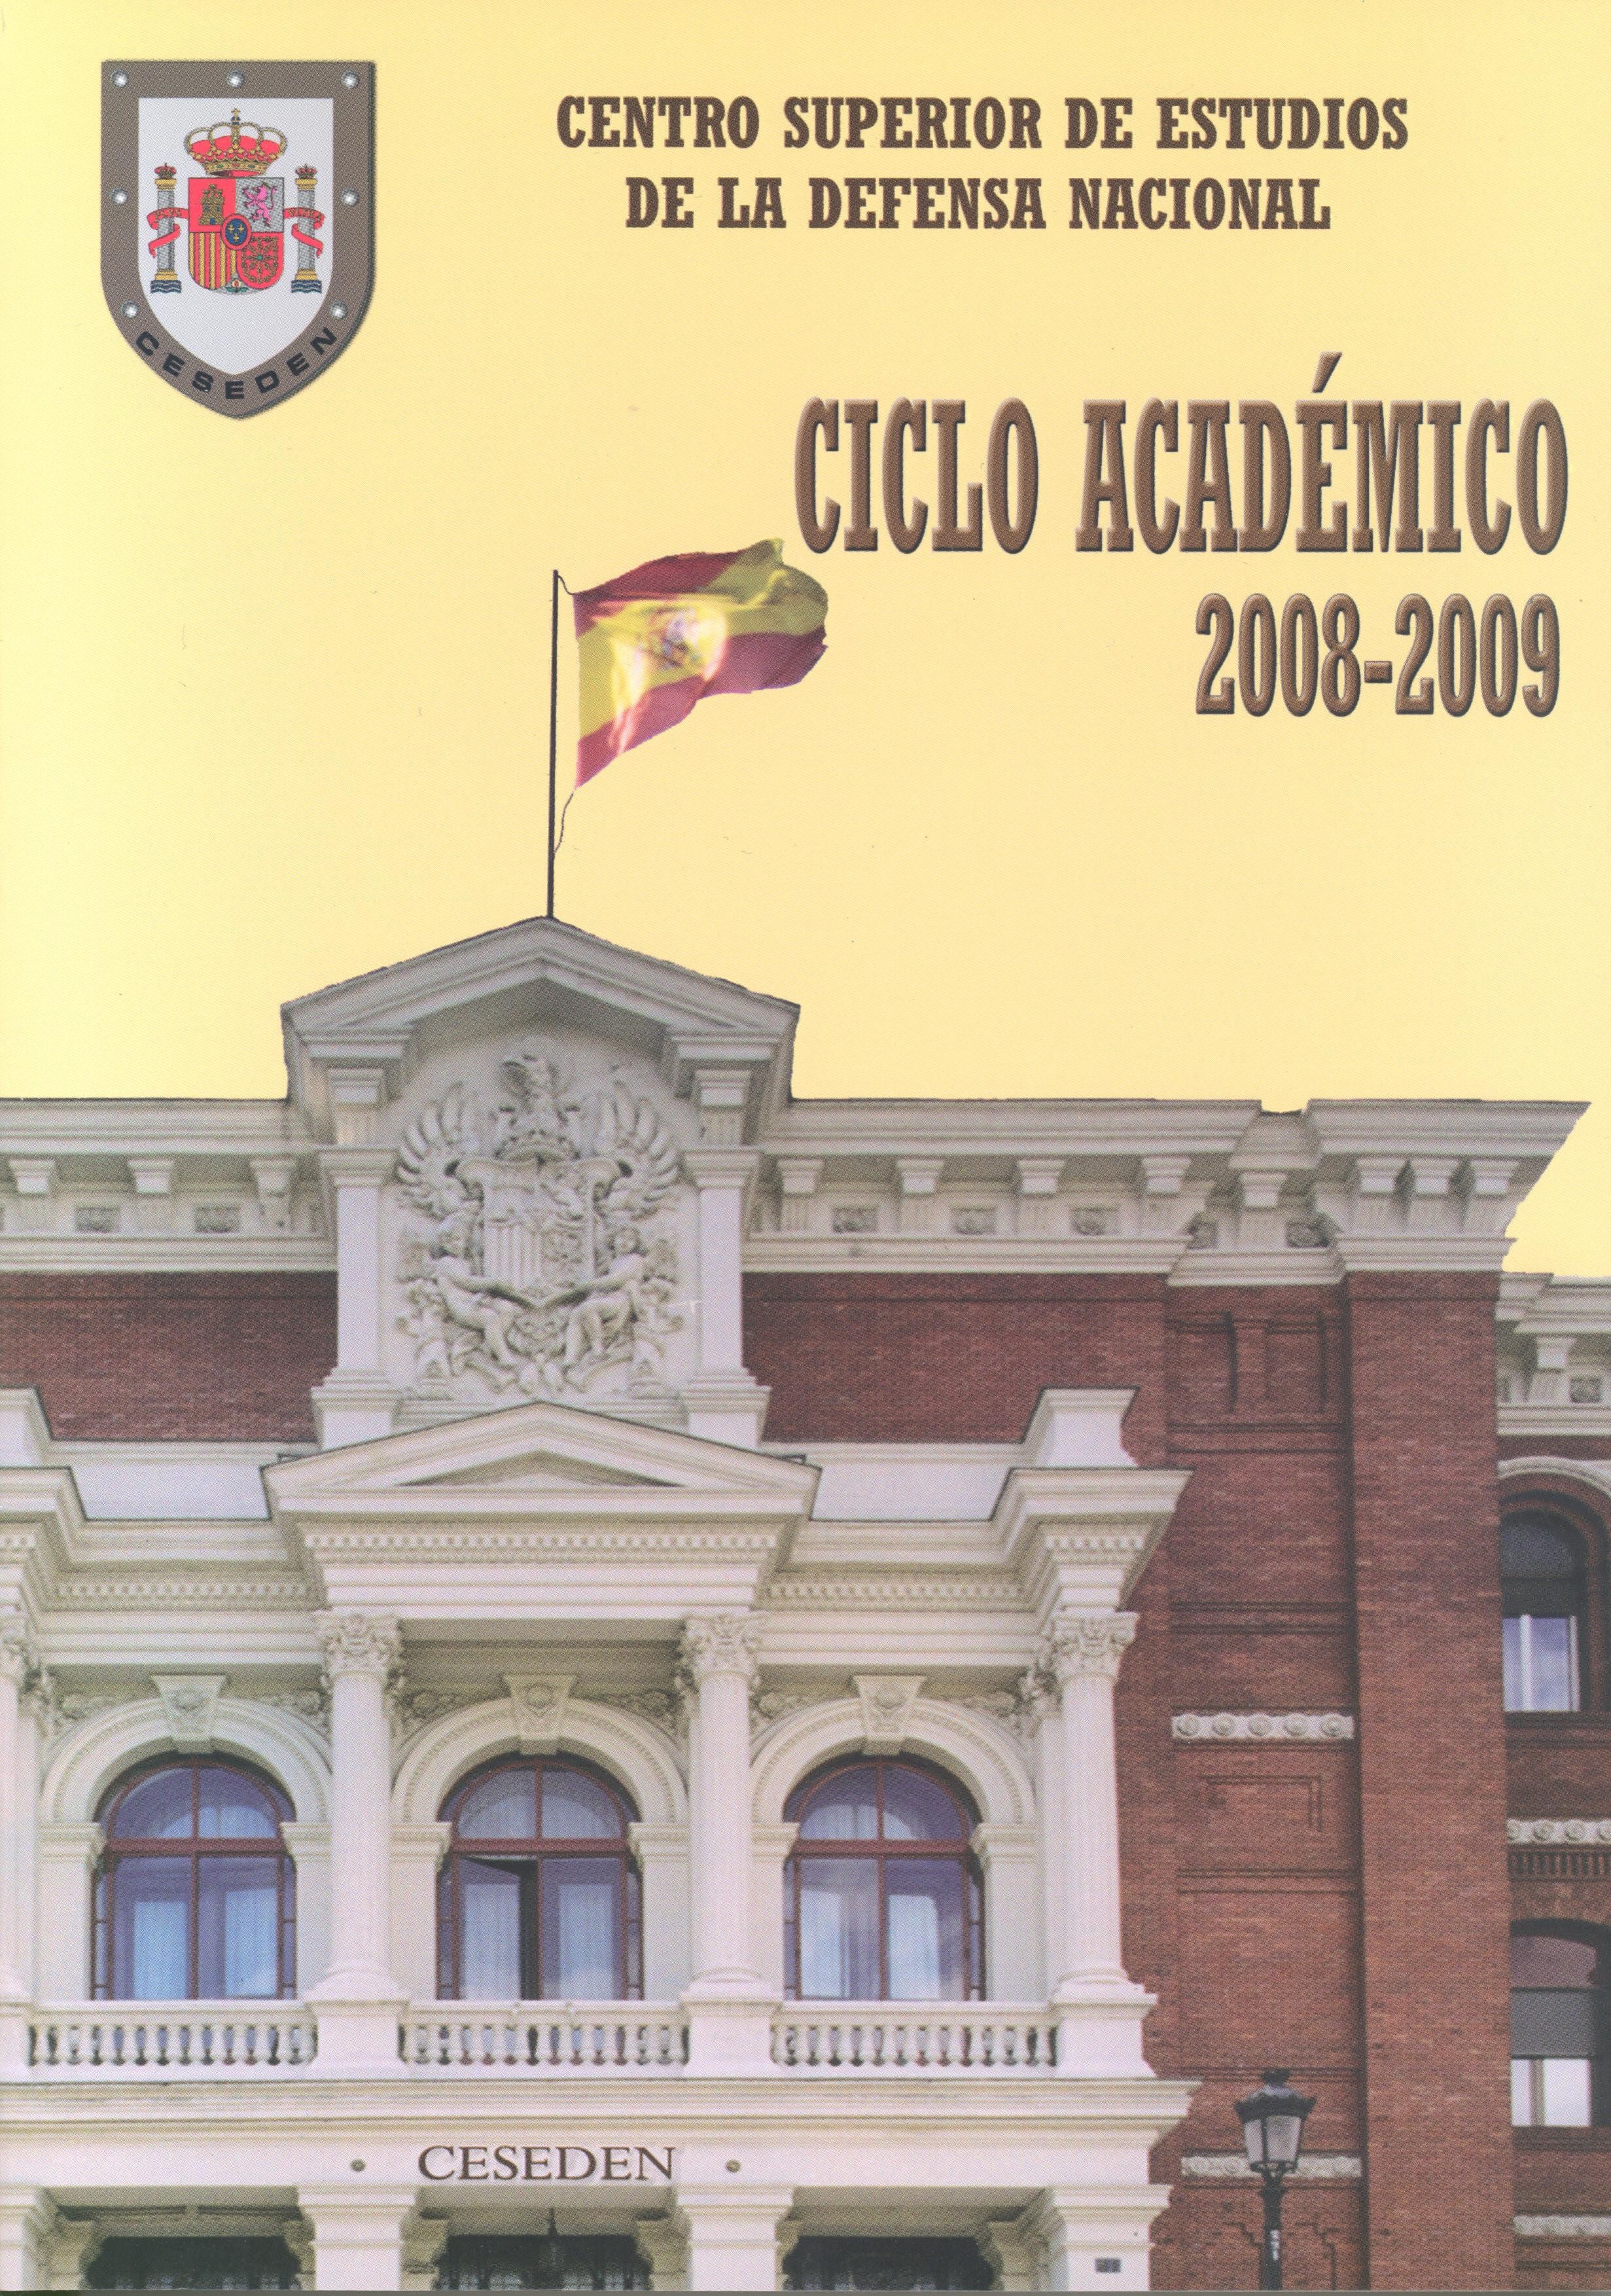 CENTRO SUPERIOR DE ESTUDIOS DE LA DEFENSA NACIONAL: CICLO ACADÉMICO 2008-2009